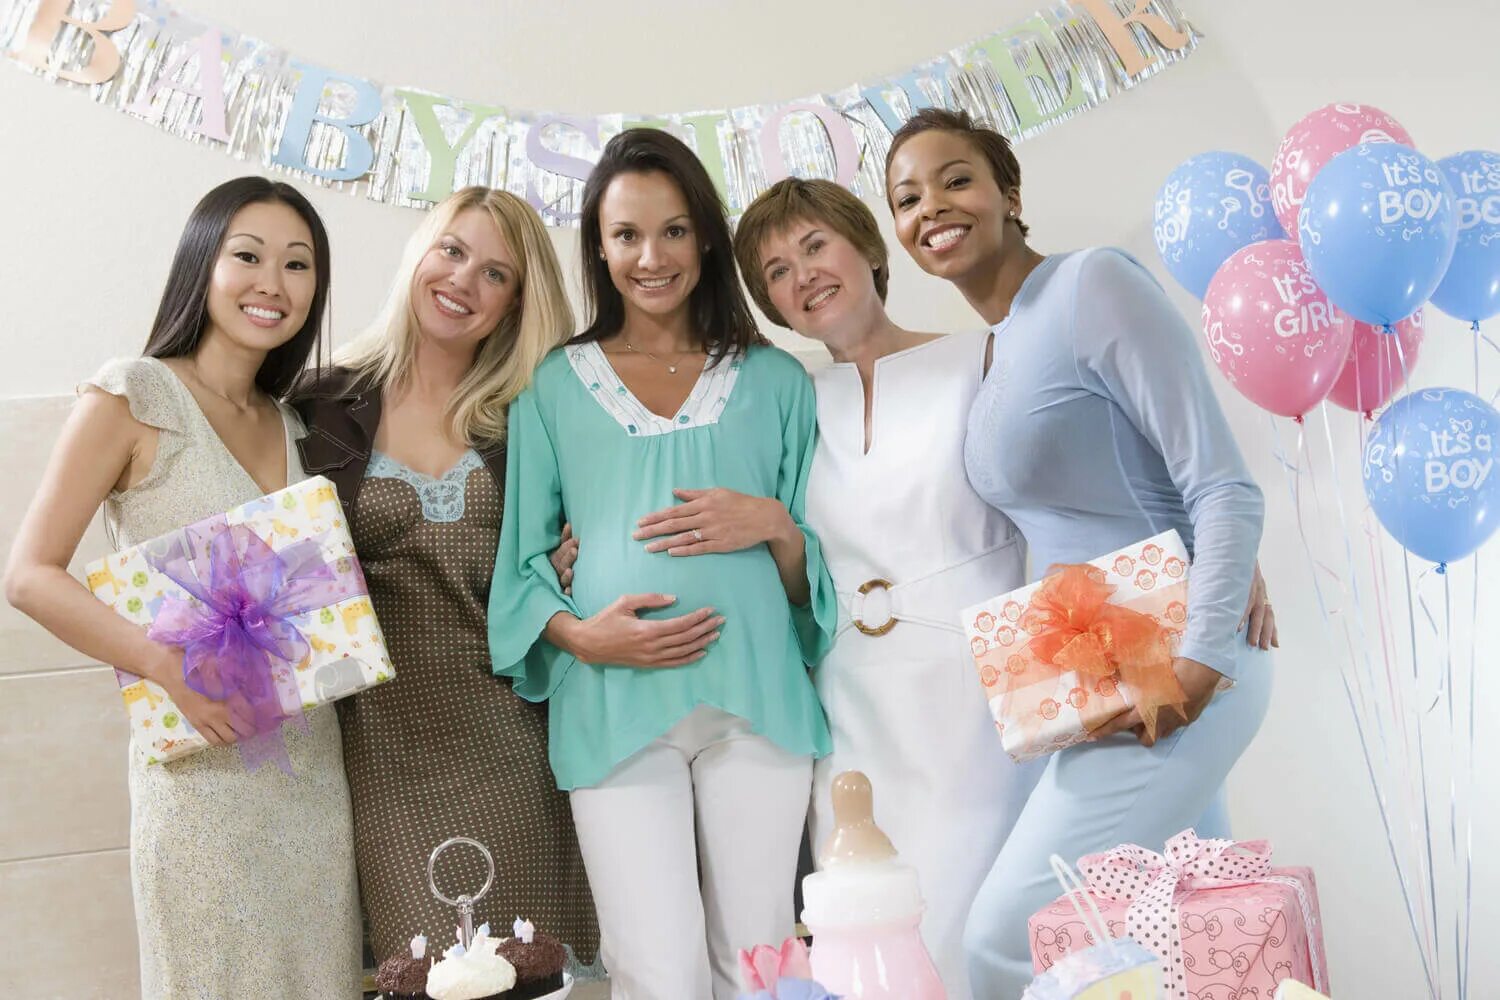 Group shower. Беременные на мероприятии. Беременные женщины в Австралии устраивают вечеринку Baby Shower.